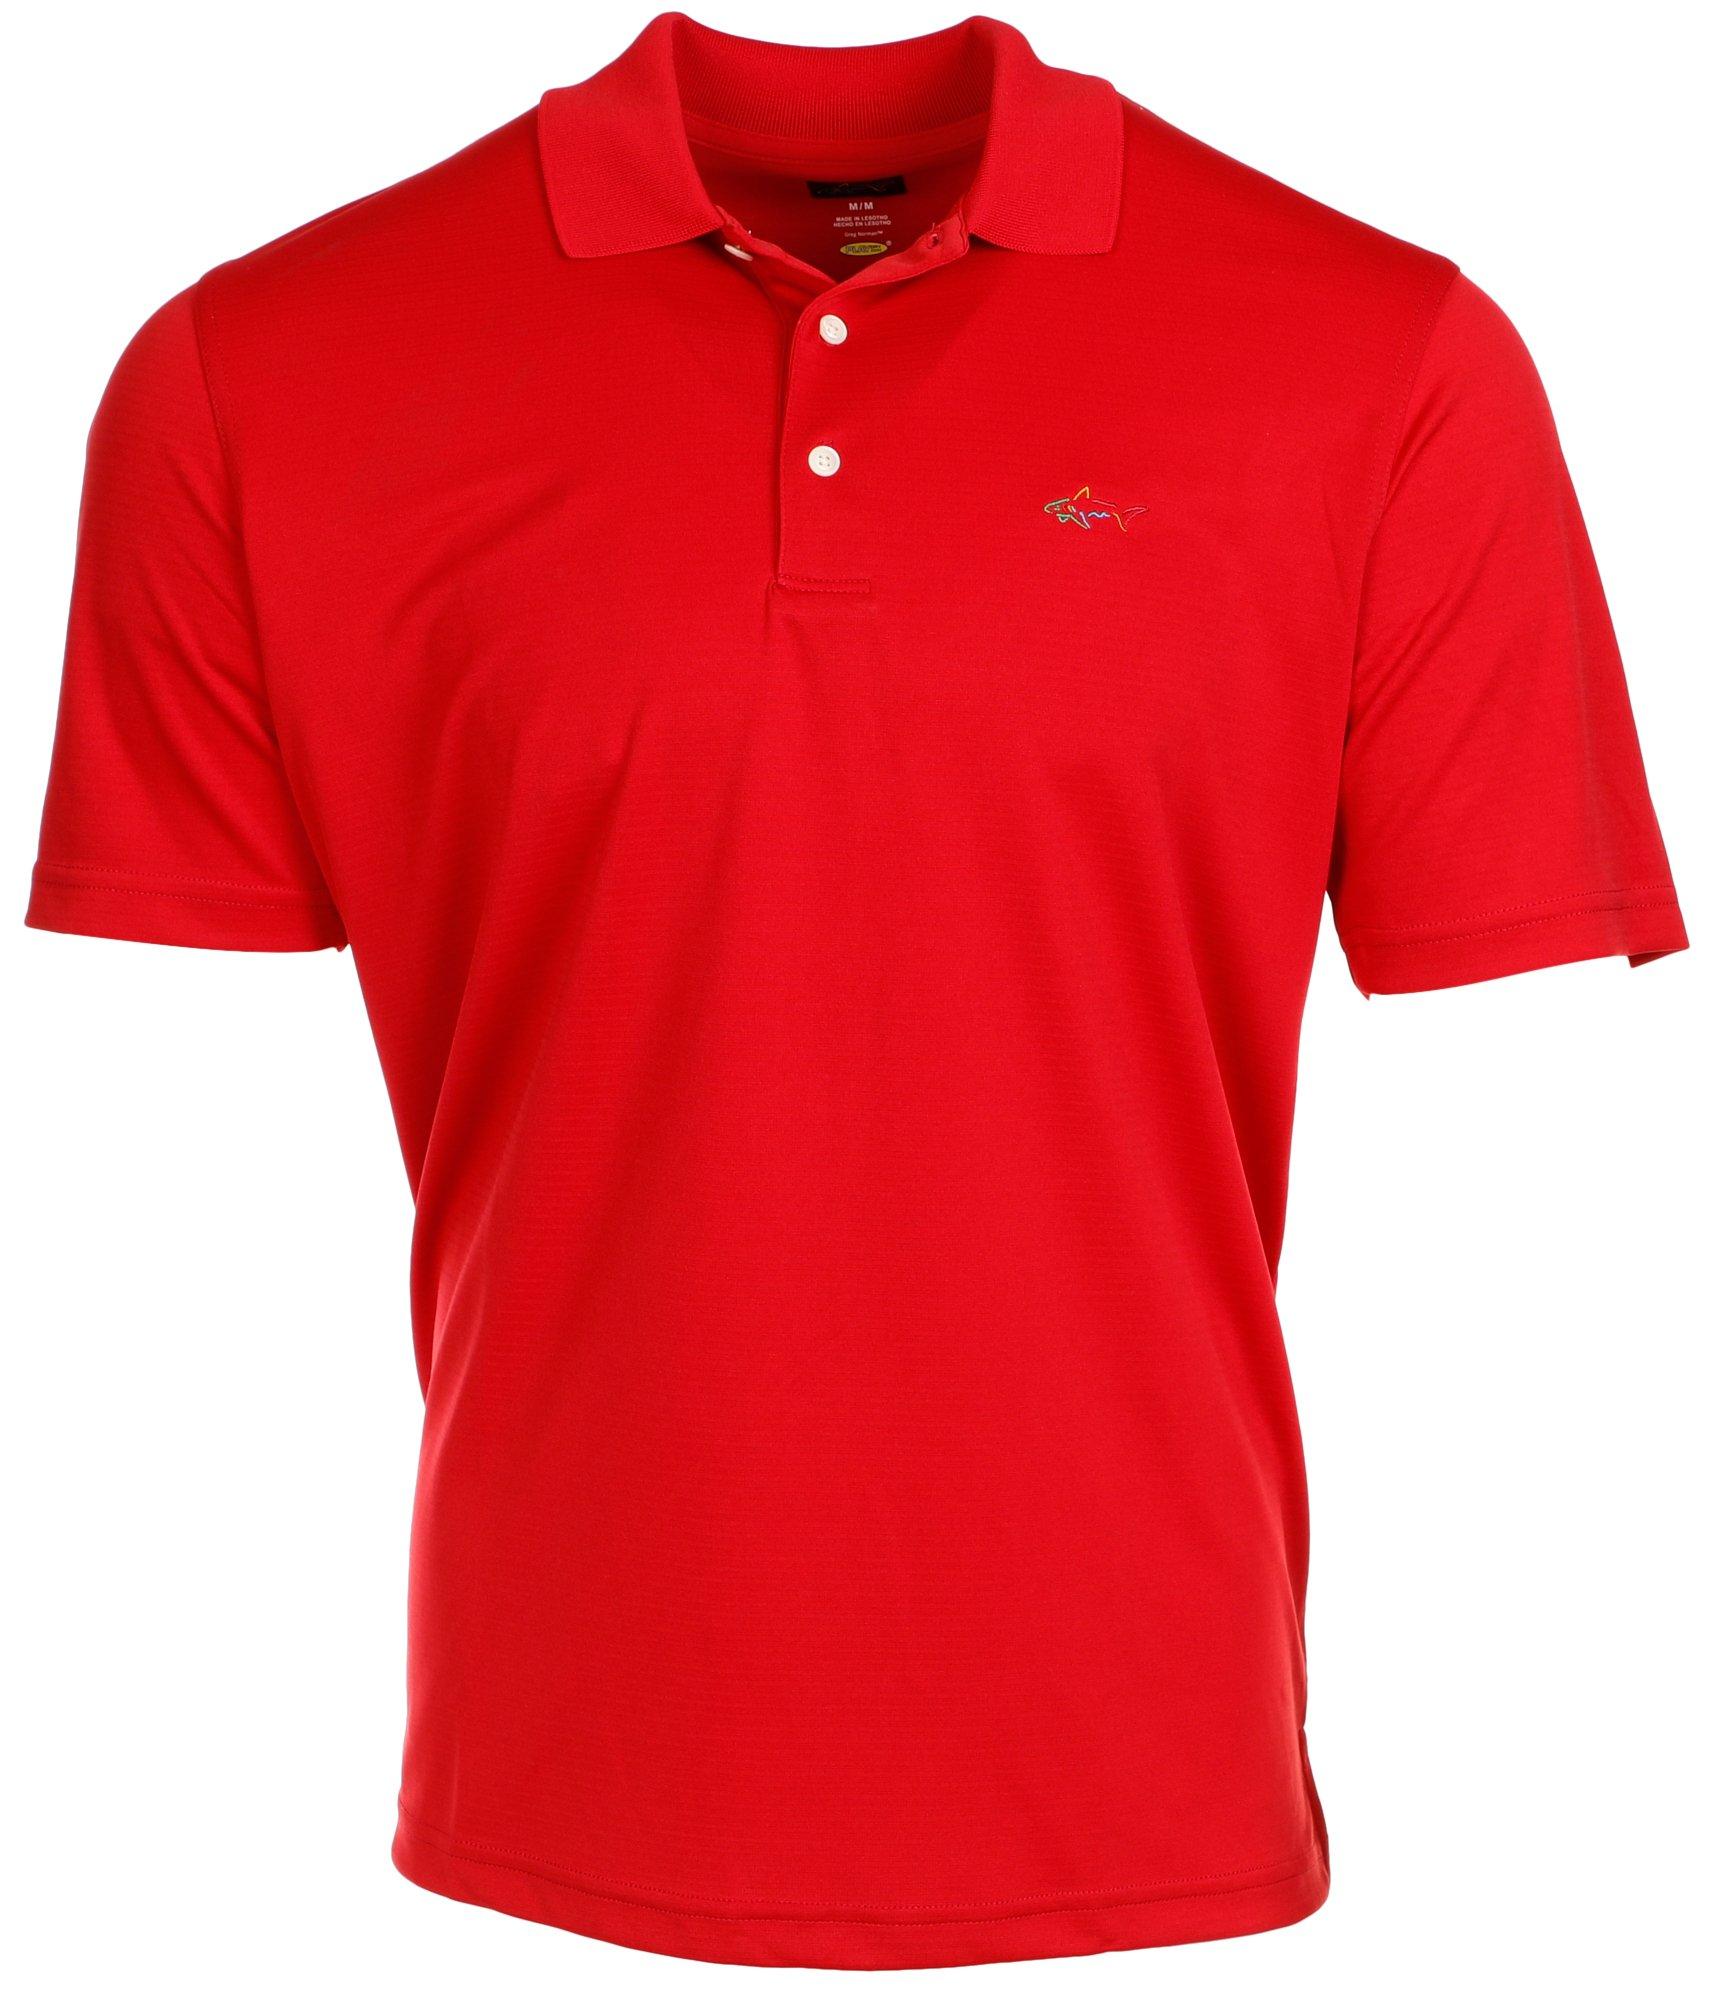 Men's Active Solid Golf Polo Shirt